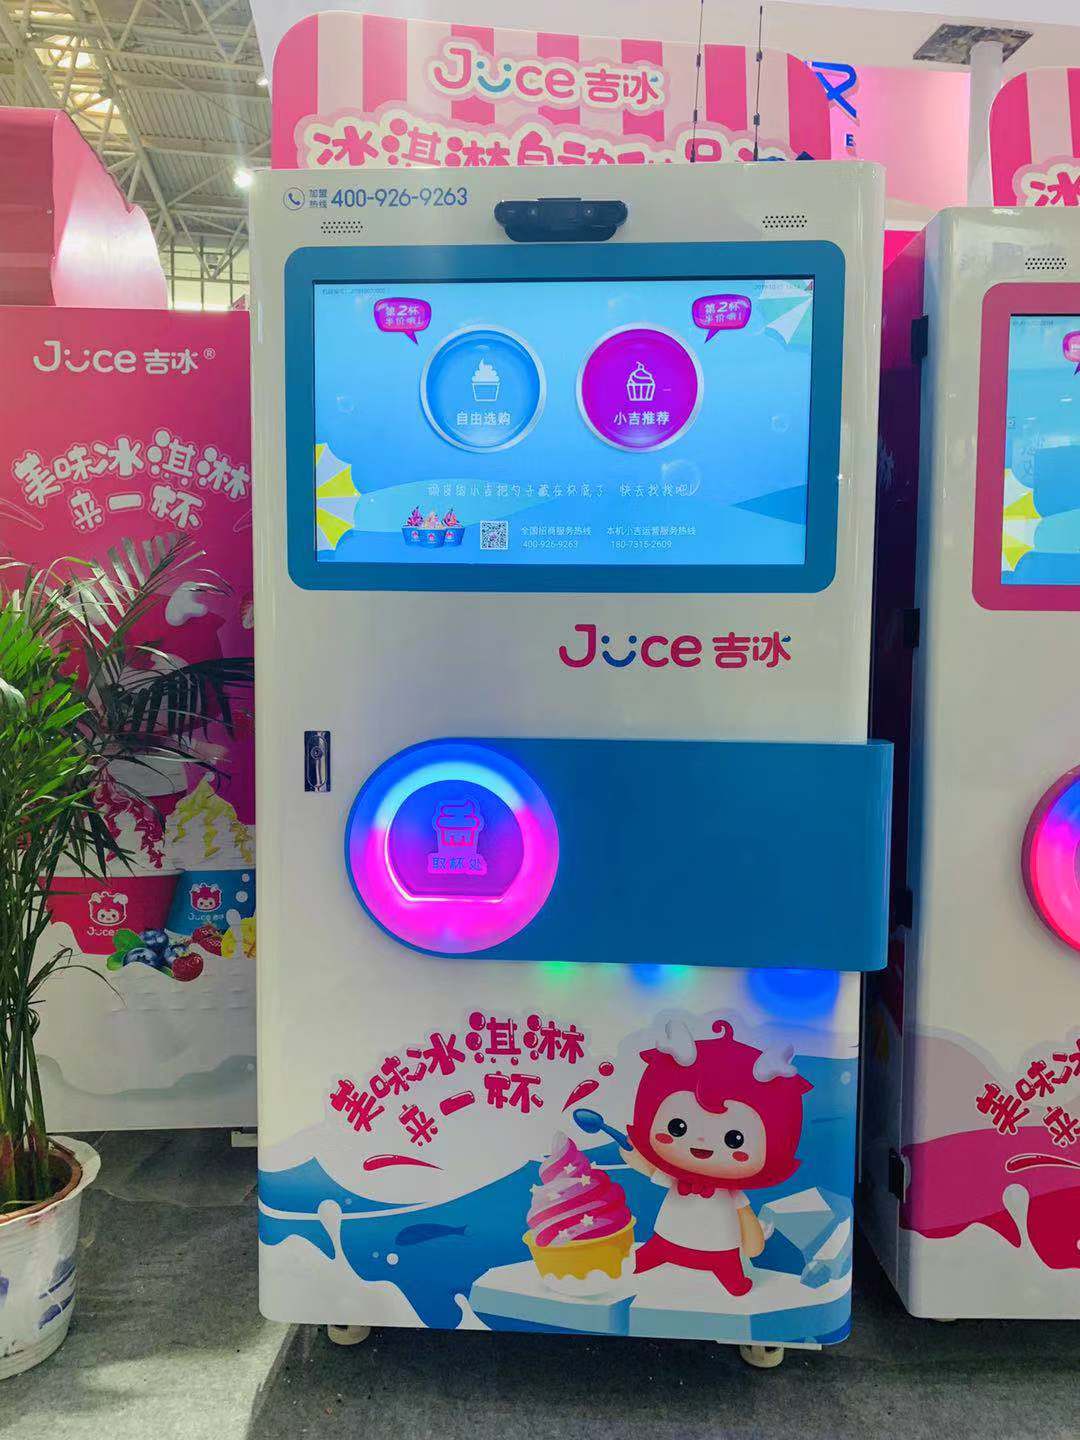 机器人冰淇淋机在2019年带来了1,710万美元的收入